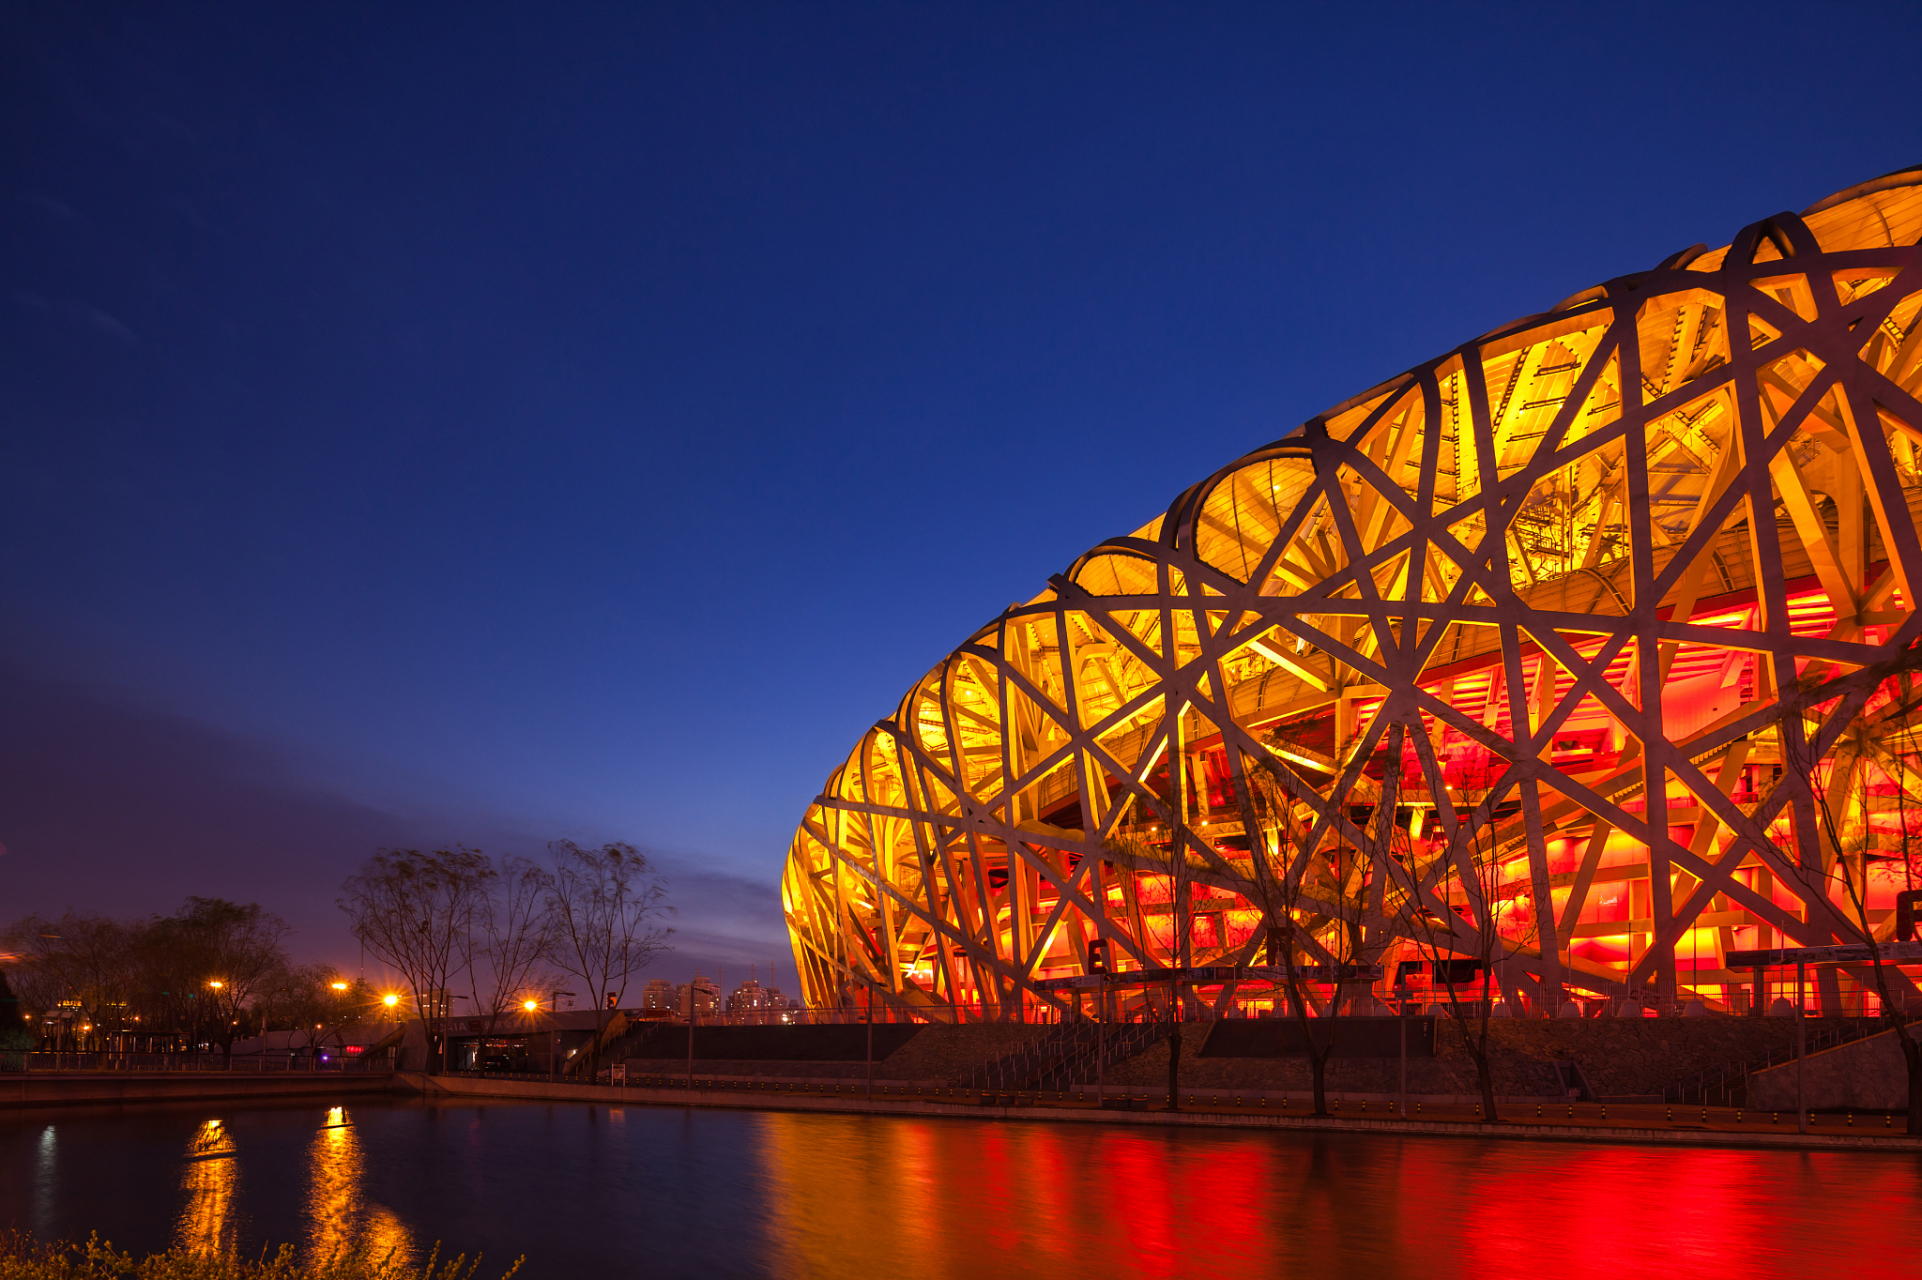 67亿元的北京奥运会主场馆鸟巢竣工 国家体育场(鸟巢)是2008年北京